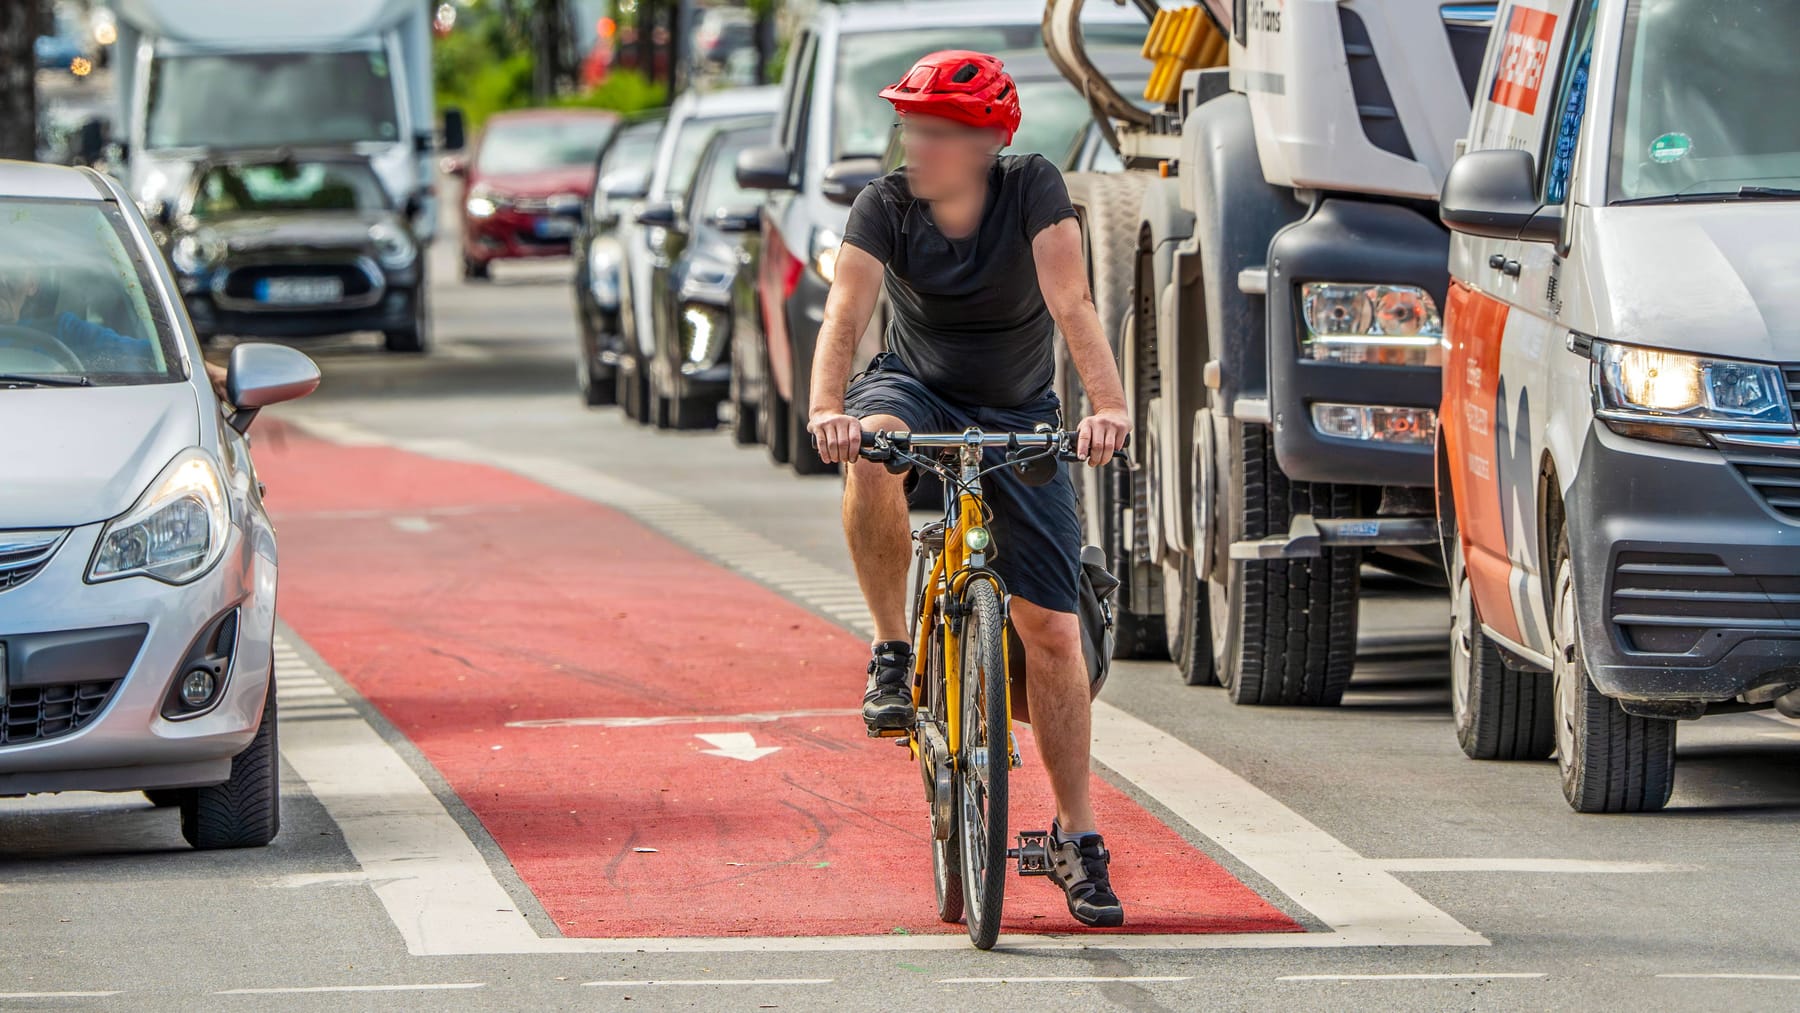 Fatal crash sparks debate about bike lanes